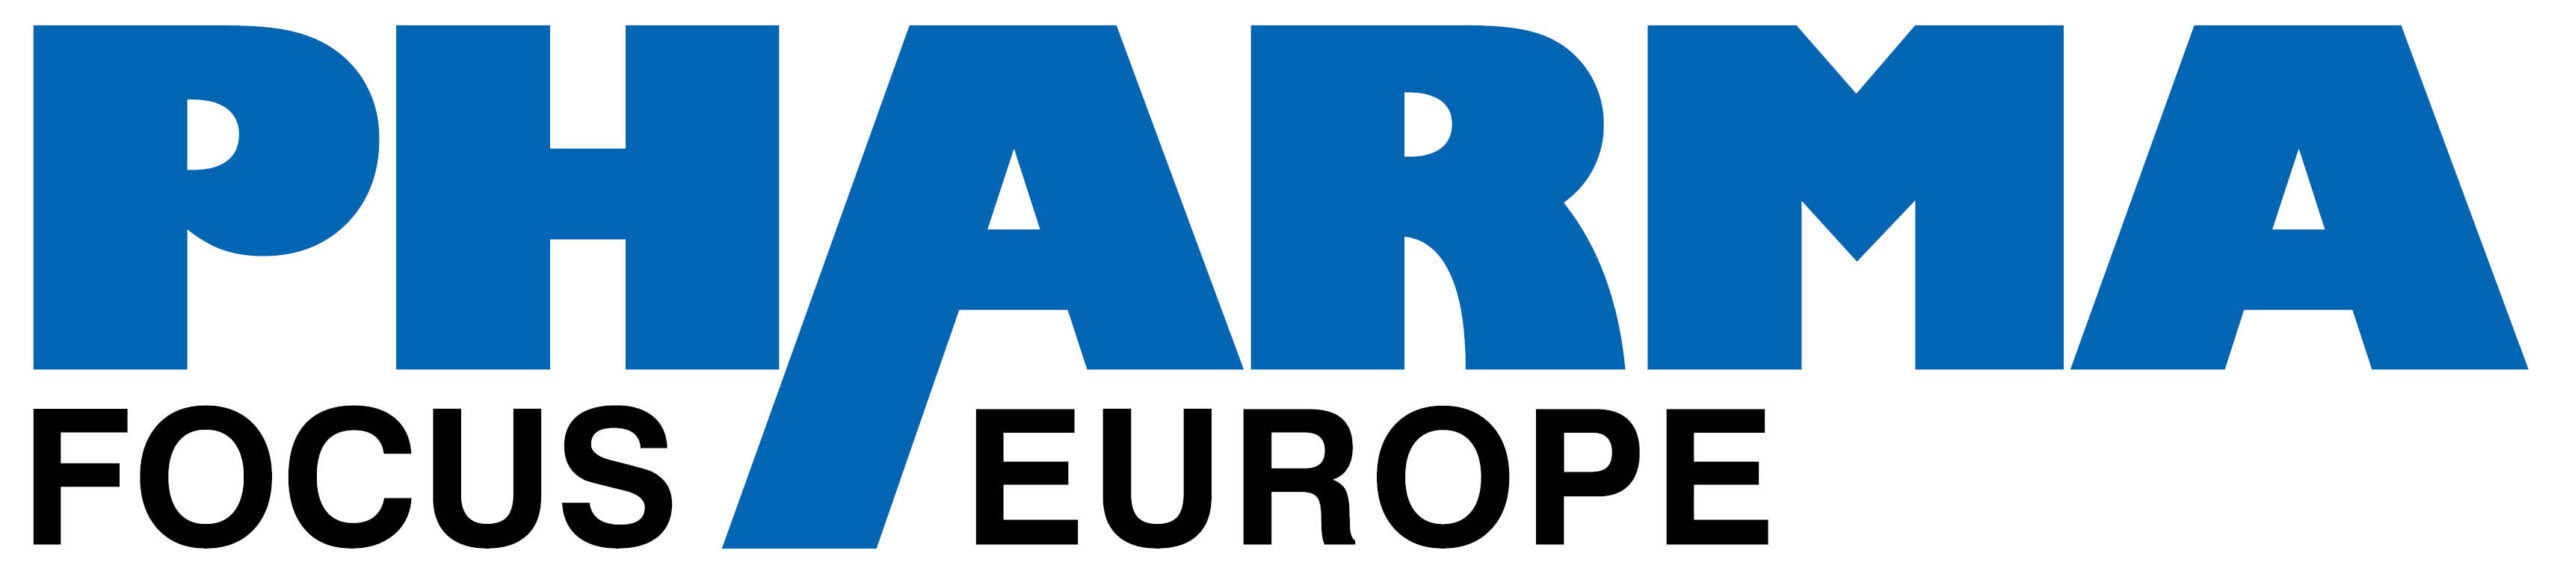 Pharma Focus Europe Logo